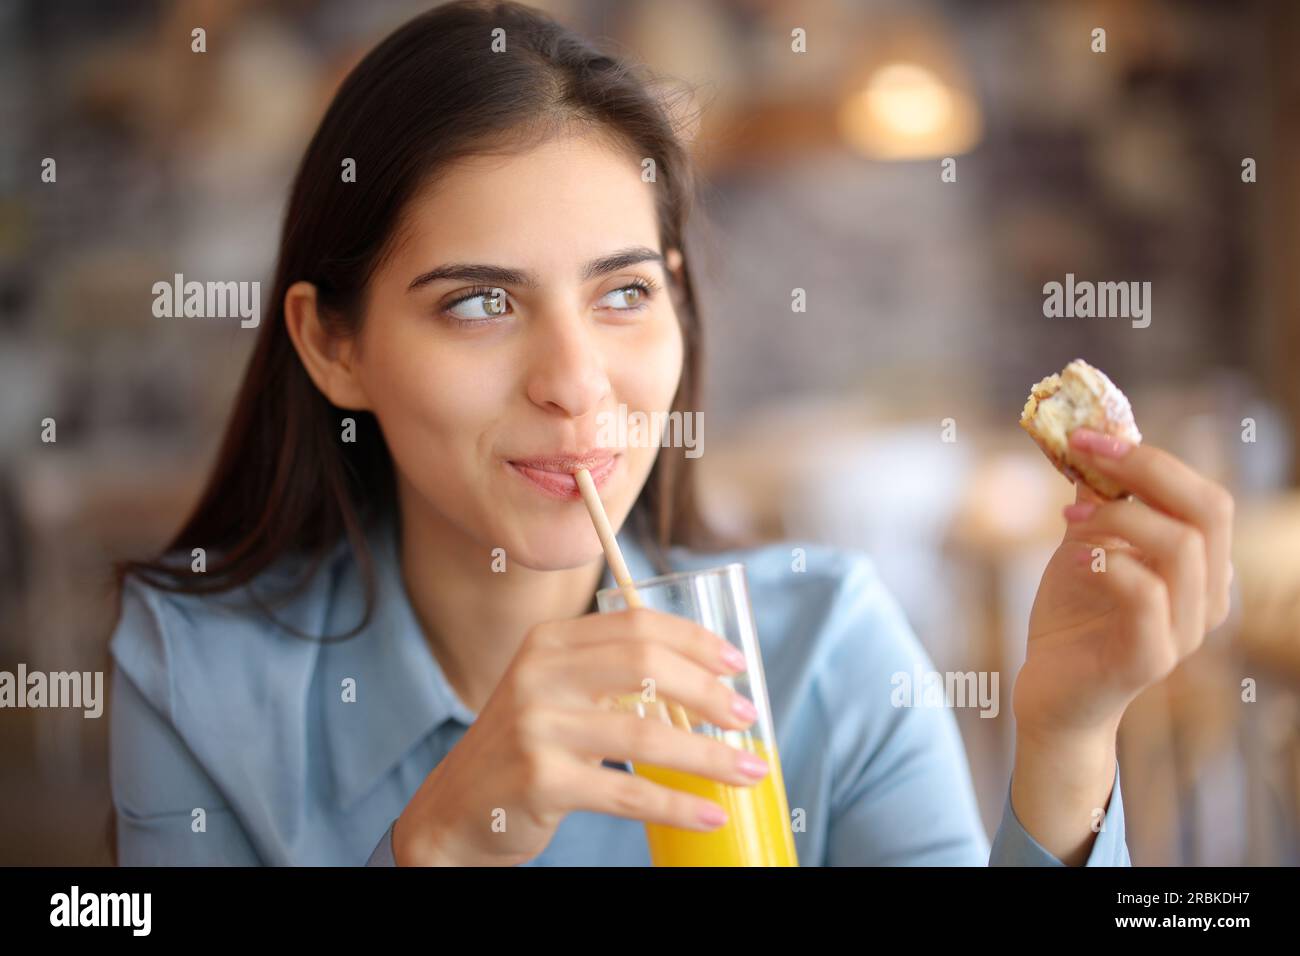 Mujer feliz bebiendo jugo comiendo croissant en un restaurante Foto de stock